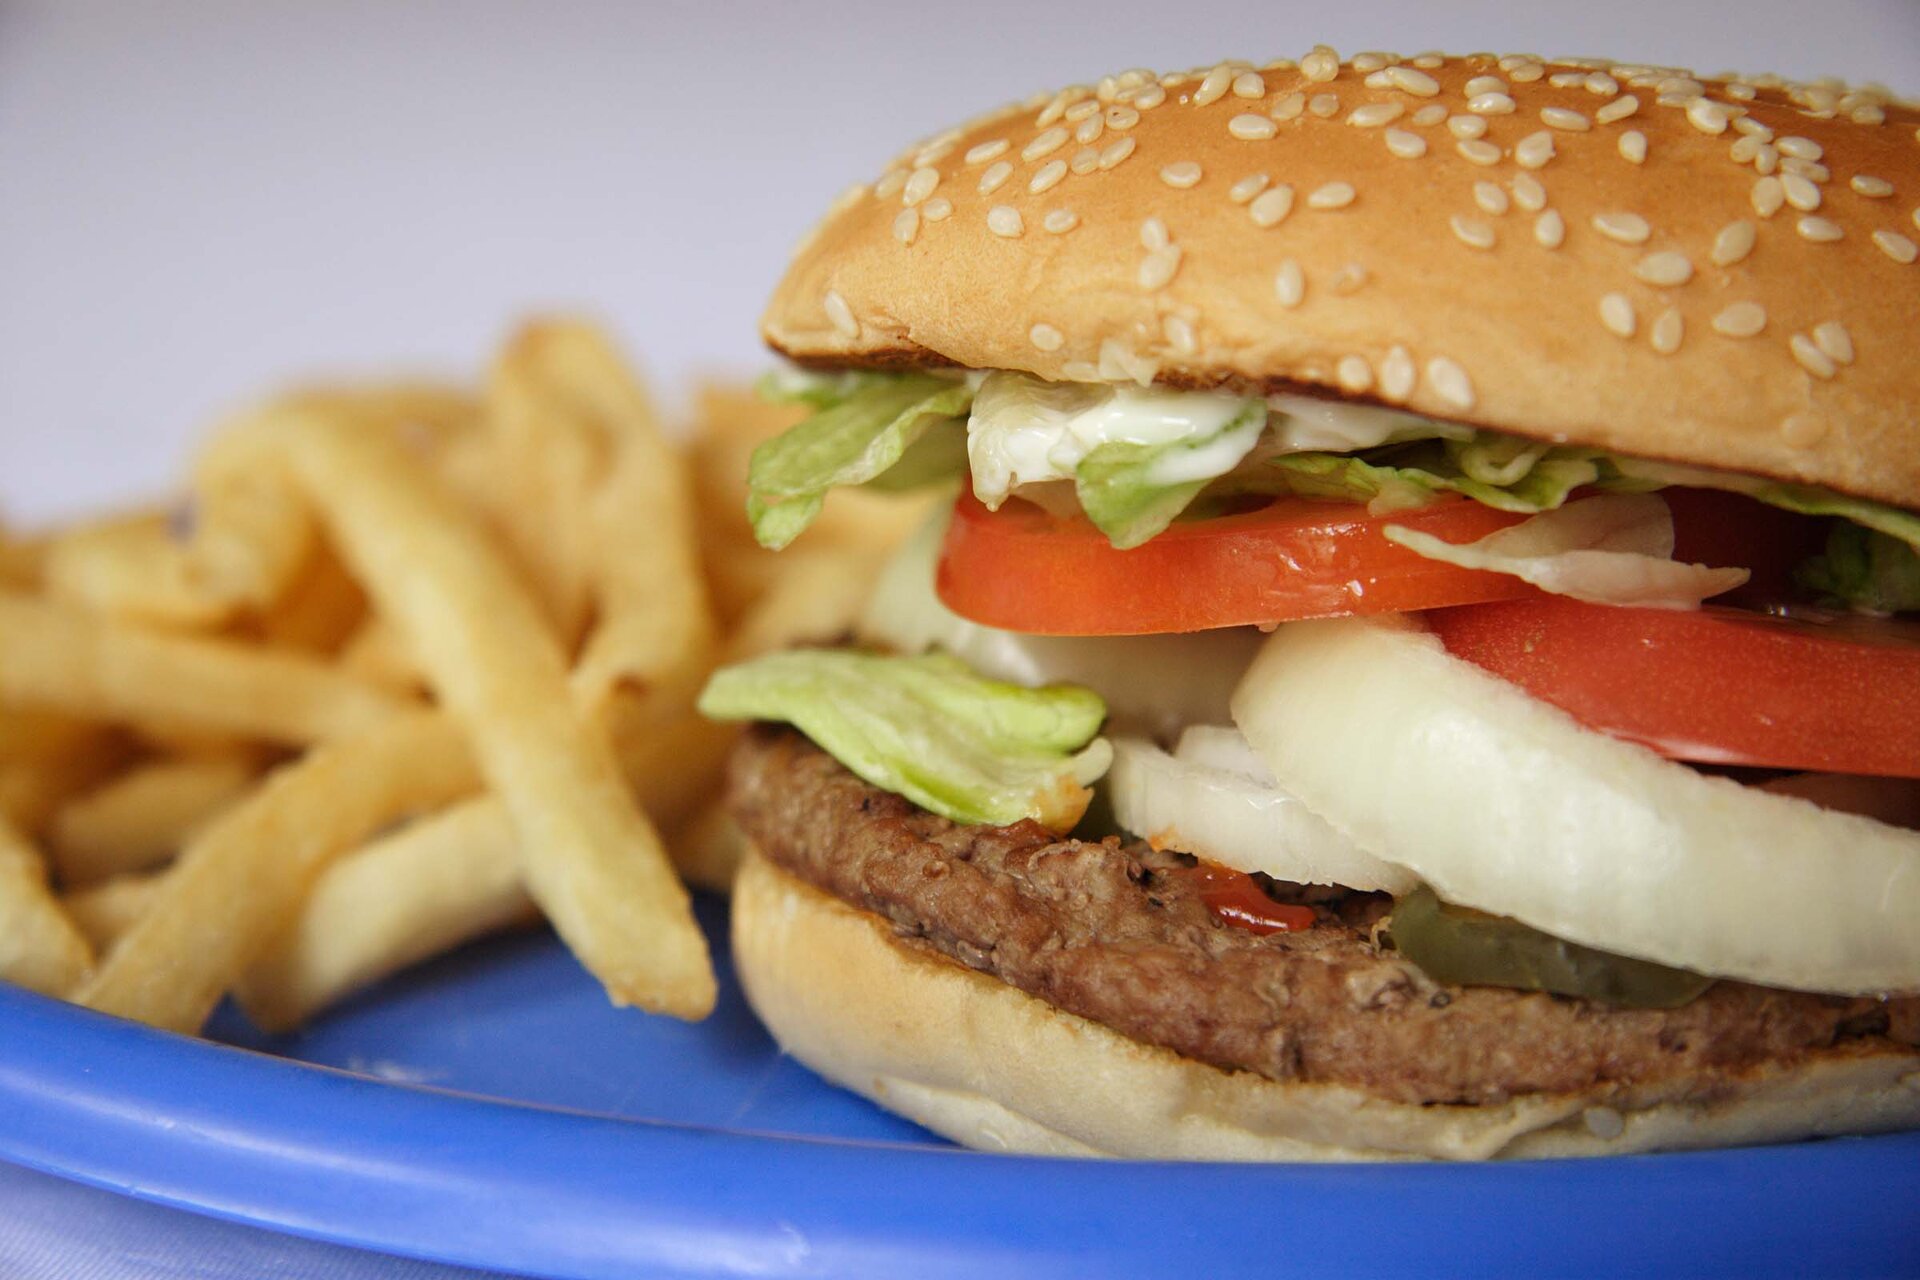 Na zdjęciu przedstawiono hamburgera oraz frytki.